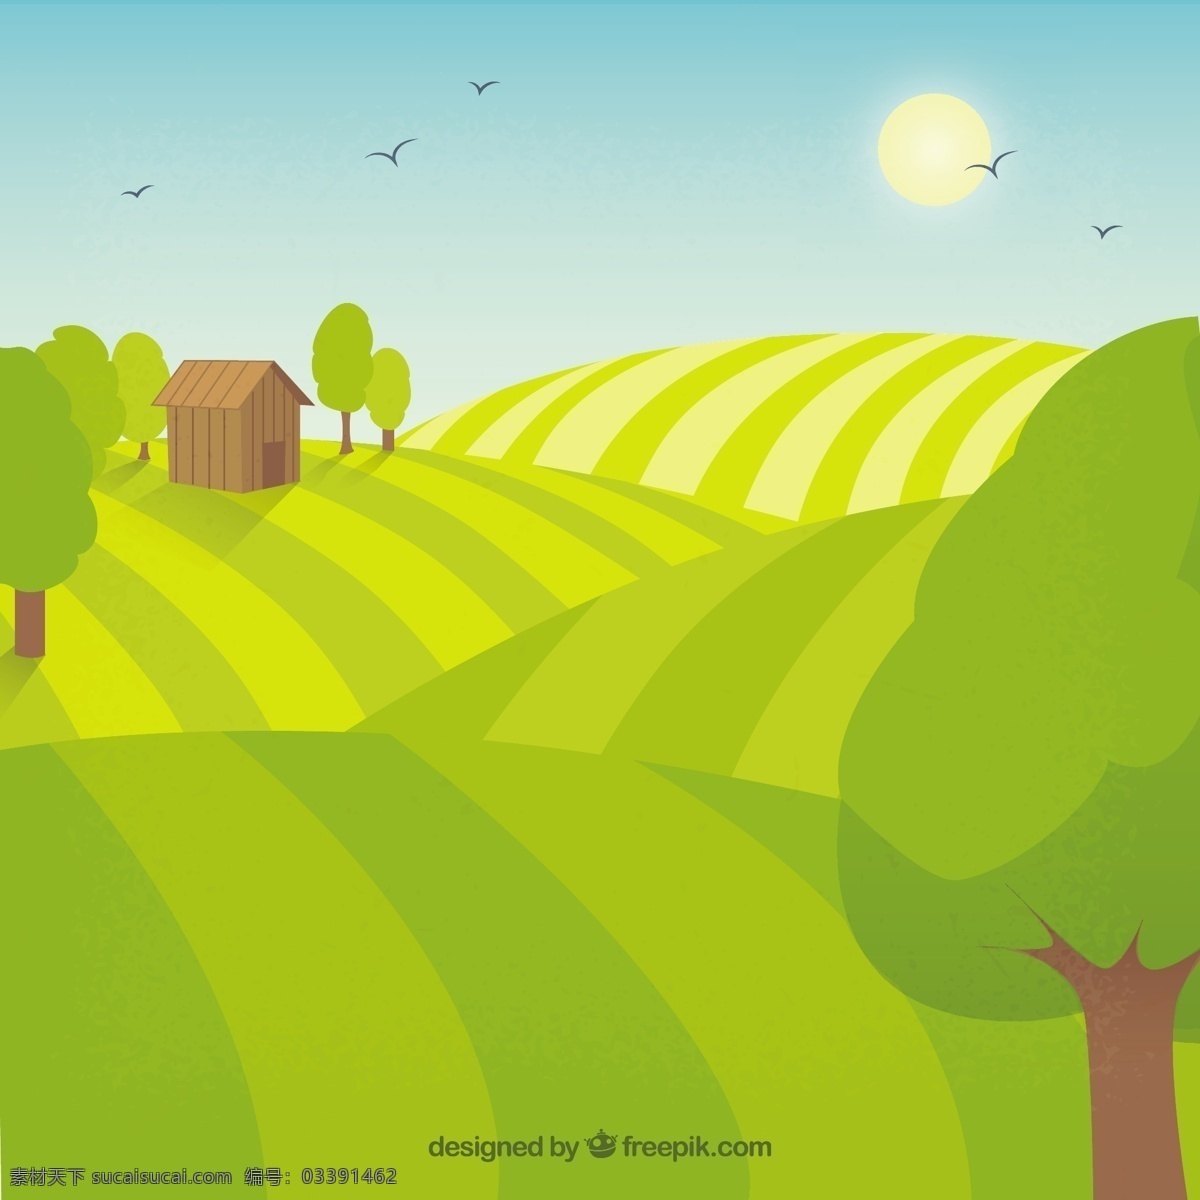 农村小农场 鸟 自然 农场 景观 蔬菜 生态 有机 环境 发展 土地 生态友好 农业 农村 可持续 友好 小 植被 黄色